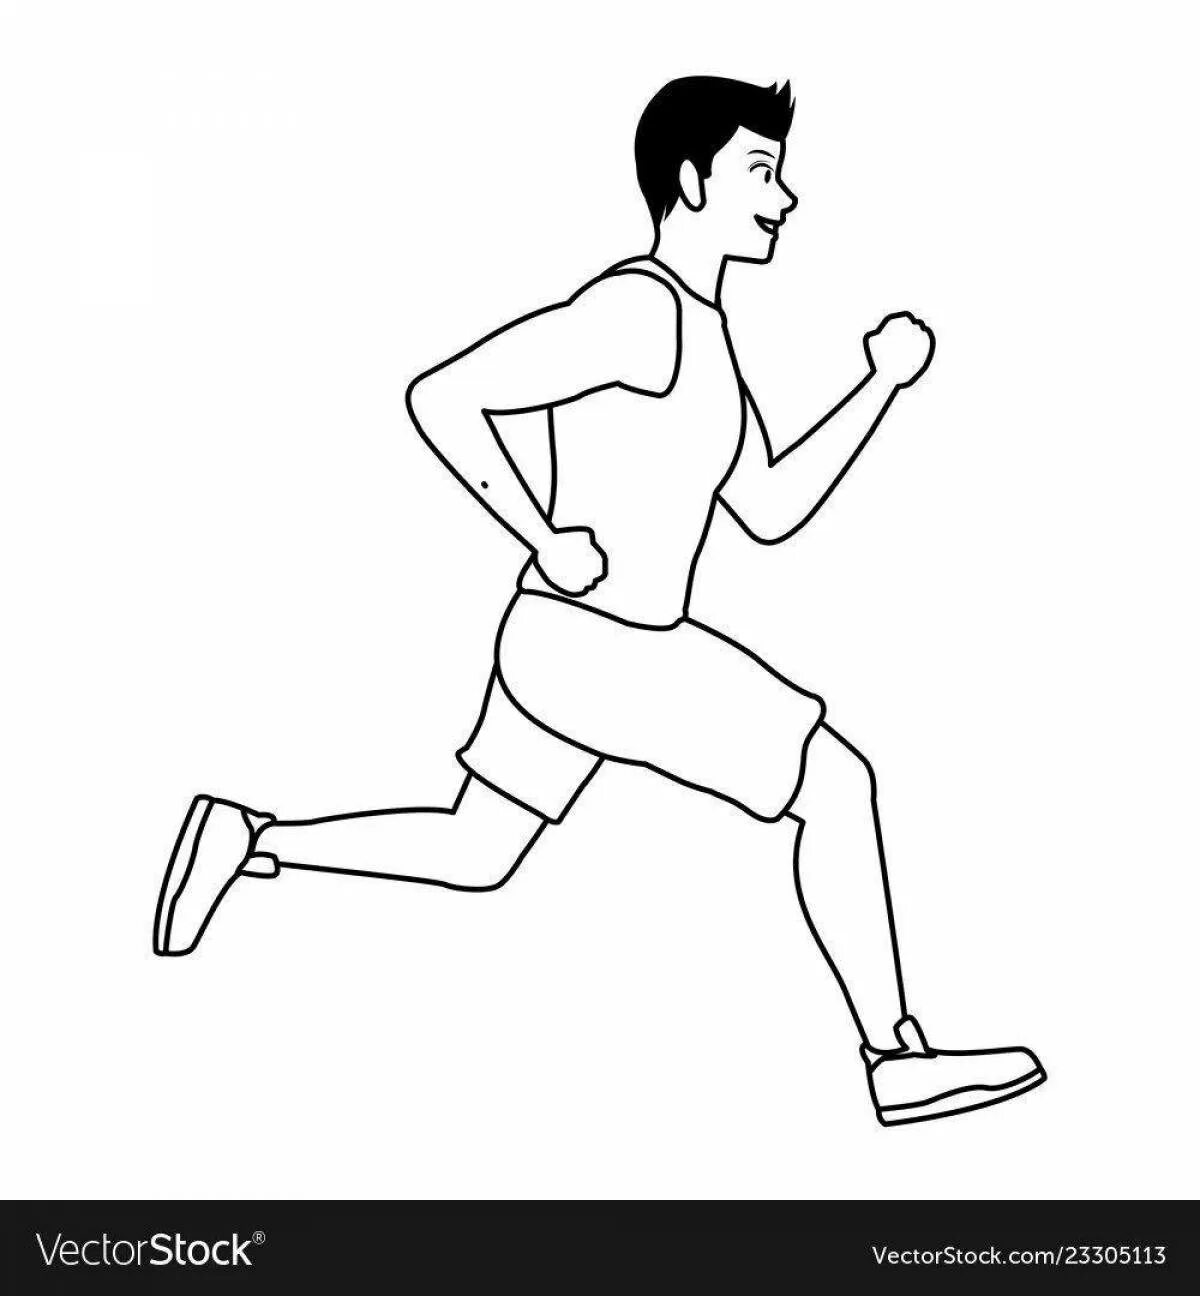 Сбежать легко. Нарисовать бегущего человека. Бегущий человек для рисования. Бегущий человек рисунок карандашом. Человек бежит схематичный рисунок.